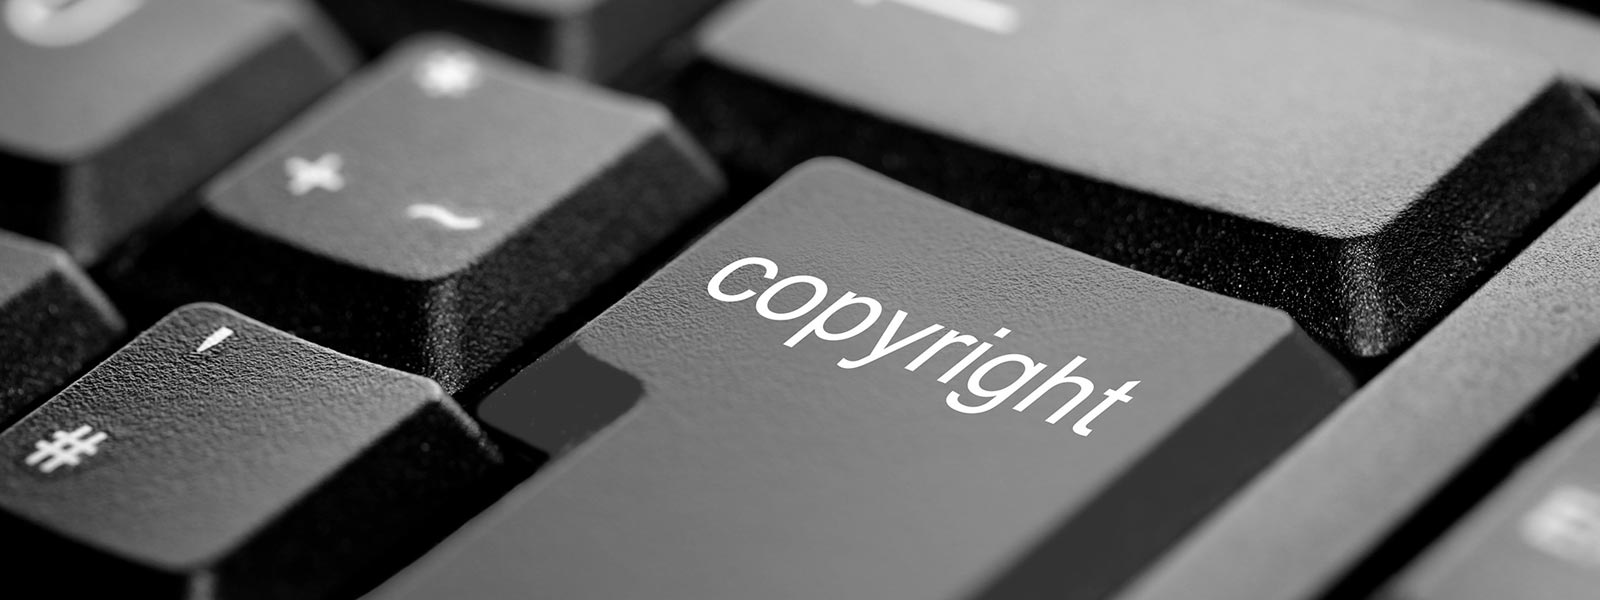 Produktpiraterie und Urheberstrafrecht